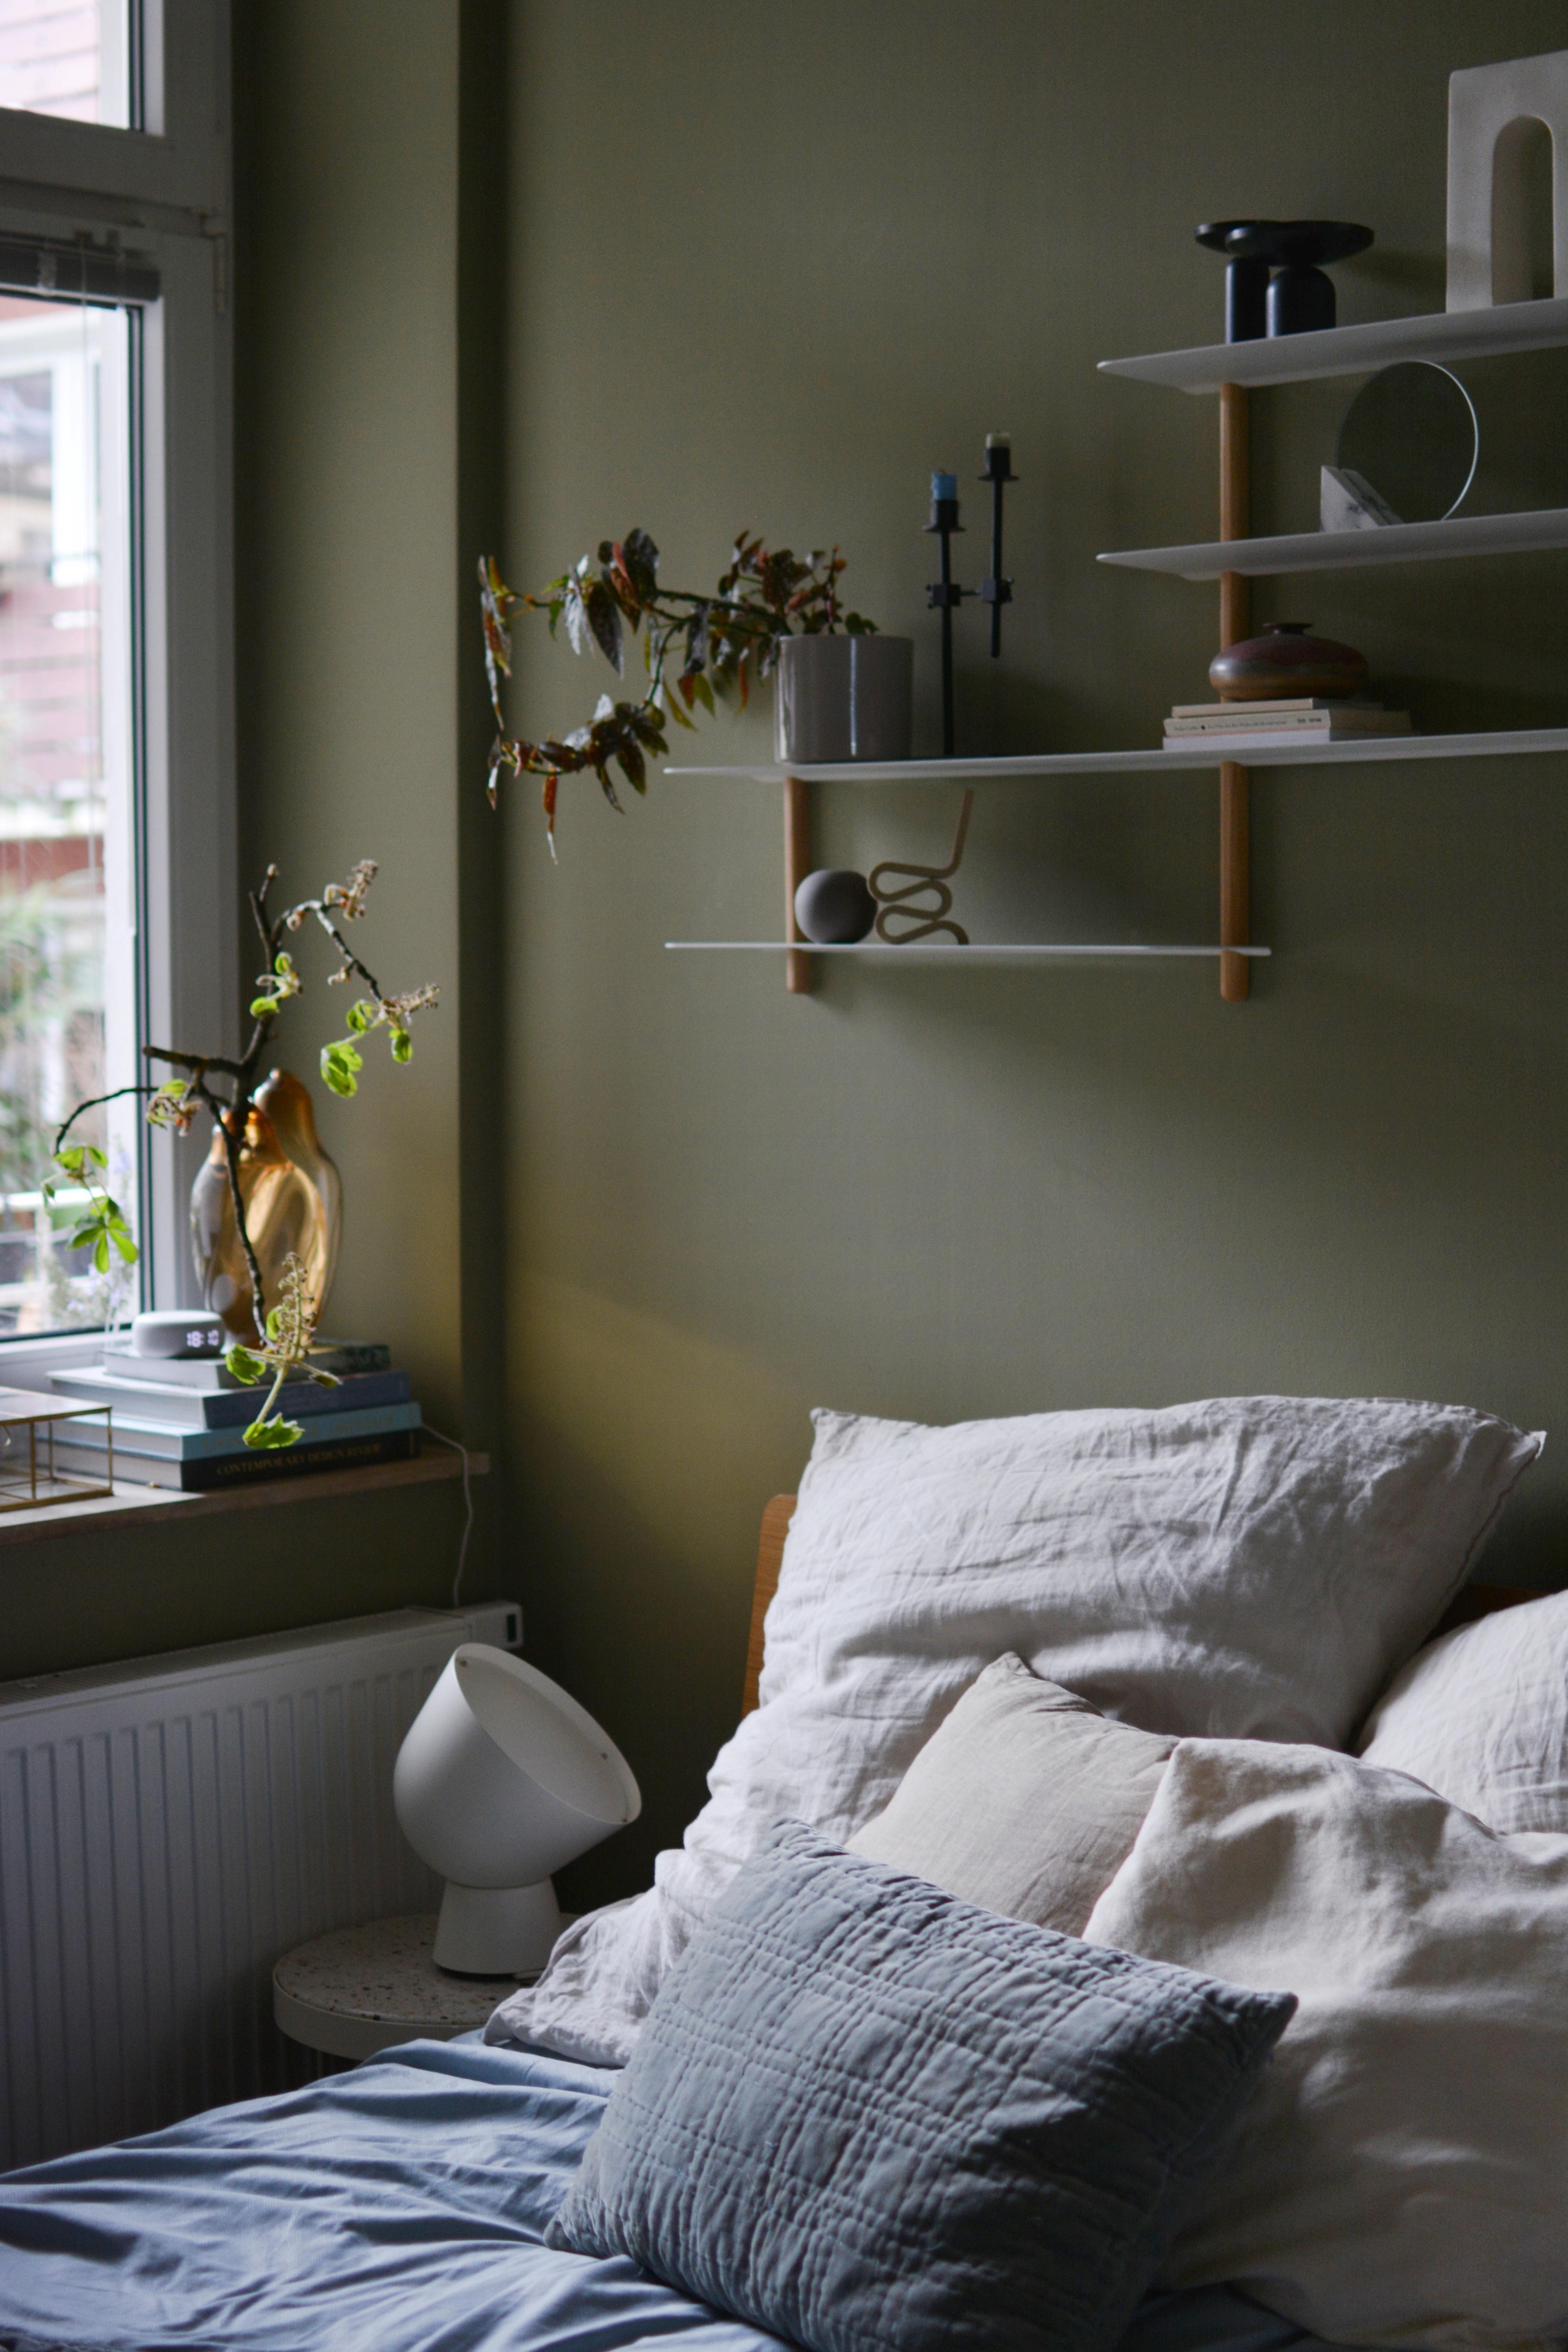 Sagt "Hallo" zu unserem neuen, gemütlichen Mini-Schlafzimmer 💚☁️ #schafzimmerliebe #smallrooms #grünewand